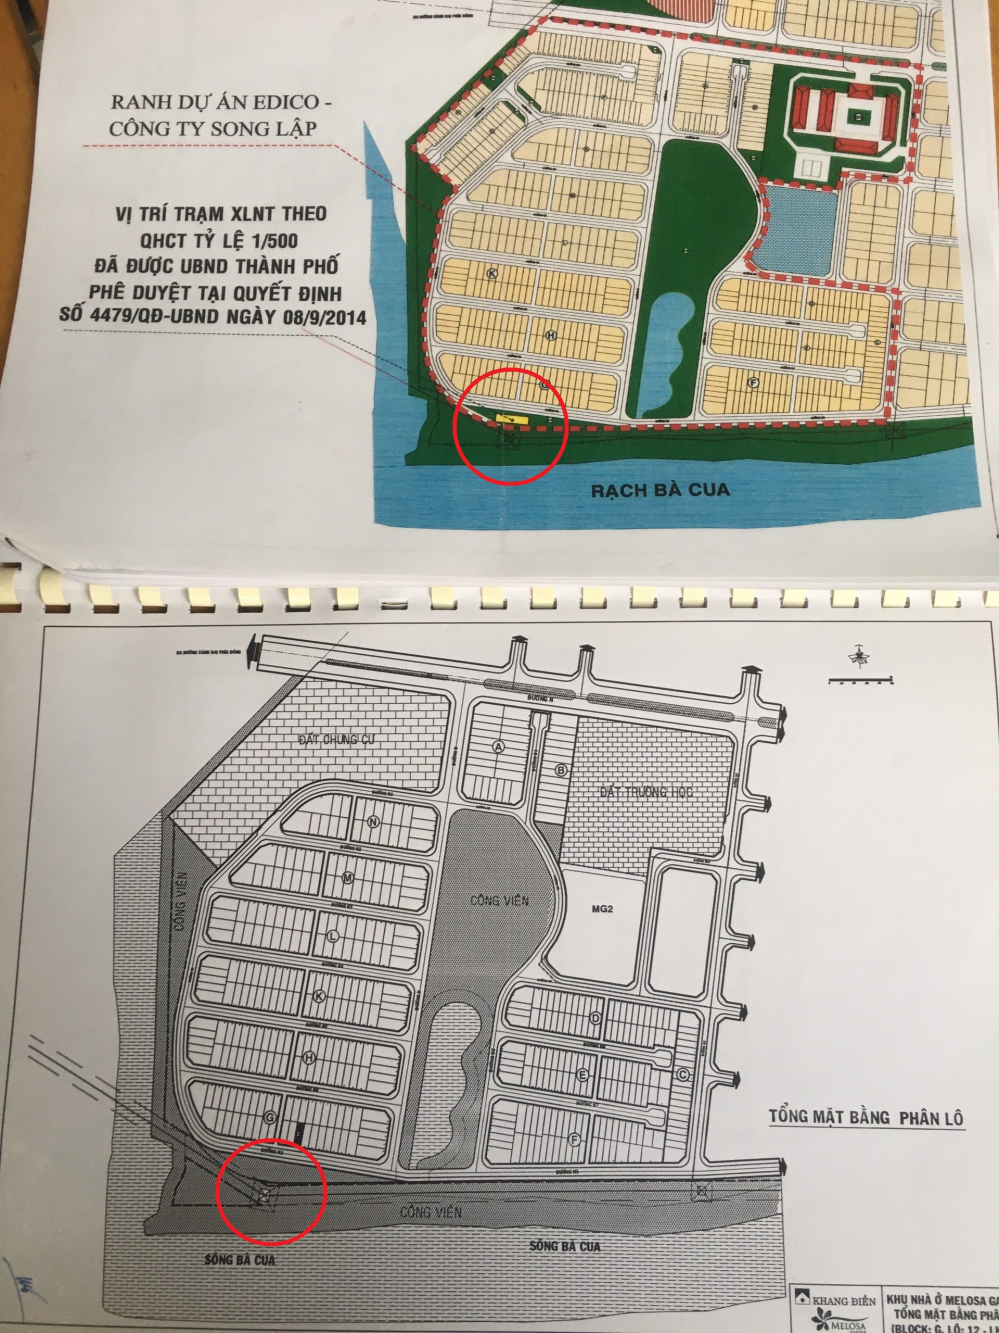 Bản đồ Song lập cung cấp cho phóng viên (trên) có thể hiện vị trí Trạm xử lý; còn bản đồ trong Hợp đồng mua bán nhà với cư dân không thể hiện (dưới).  